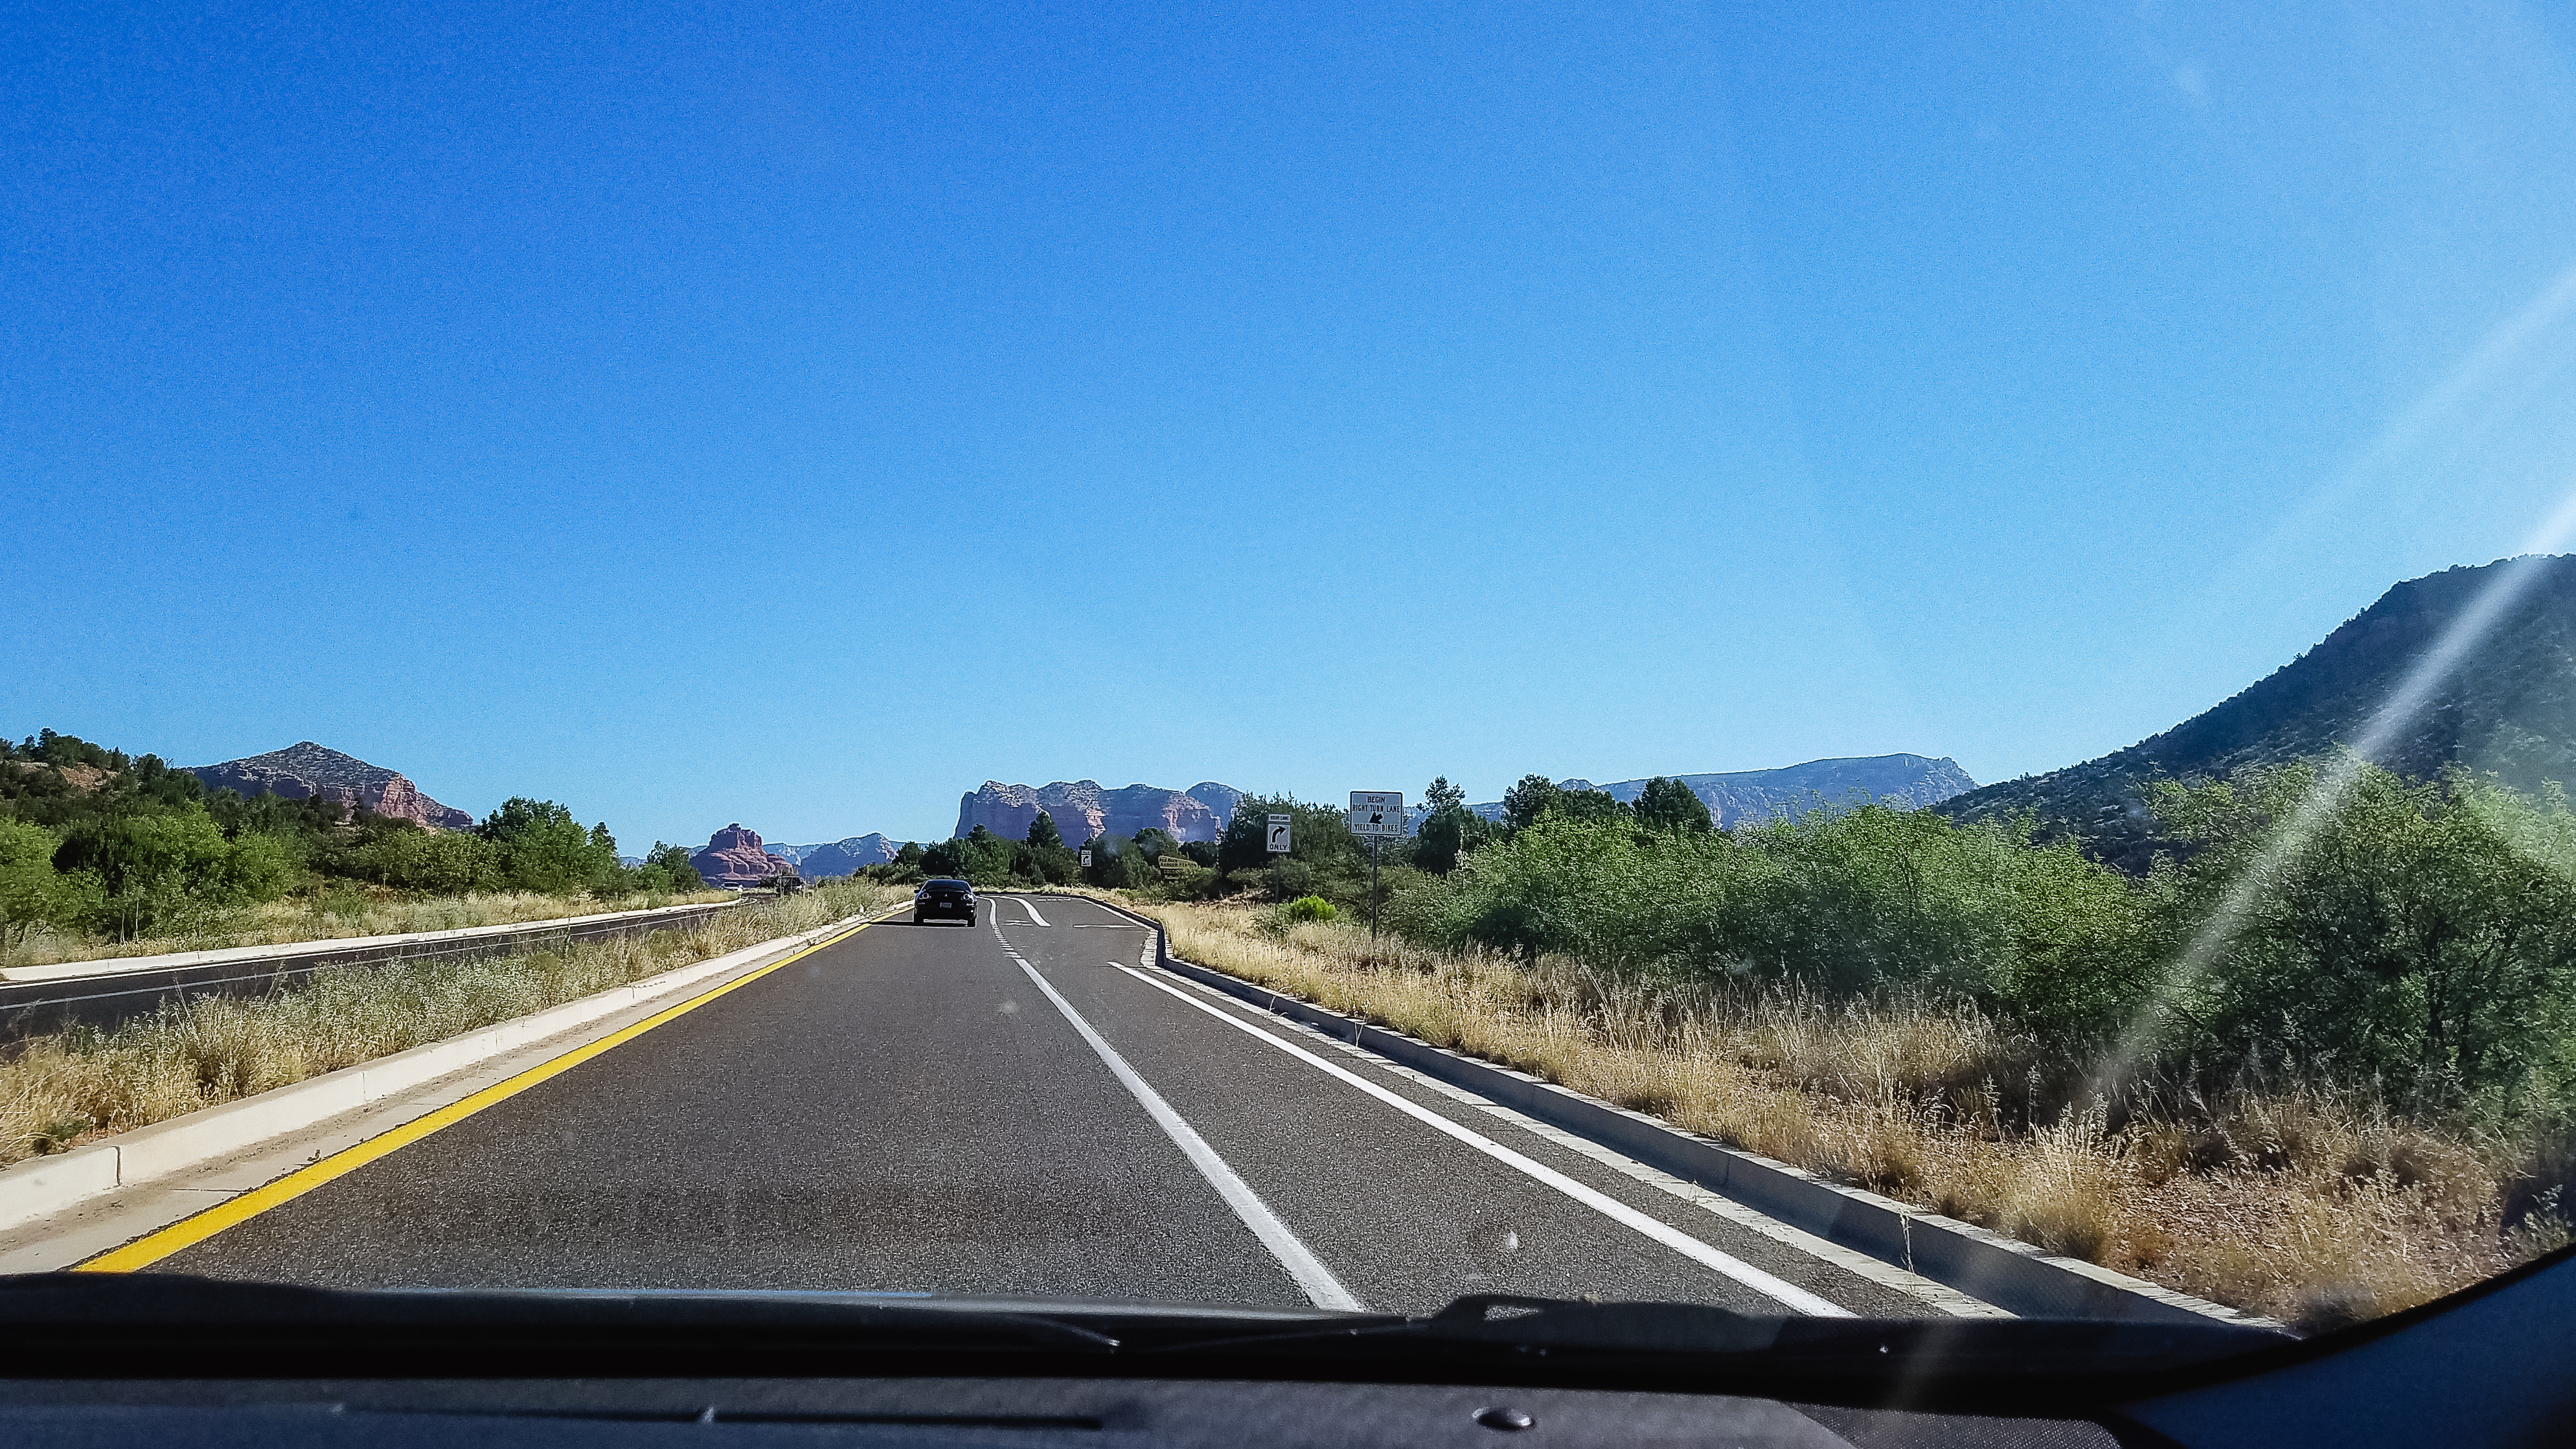 On the road toward Sedona.